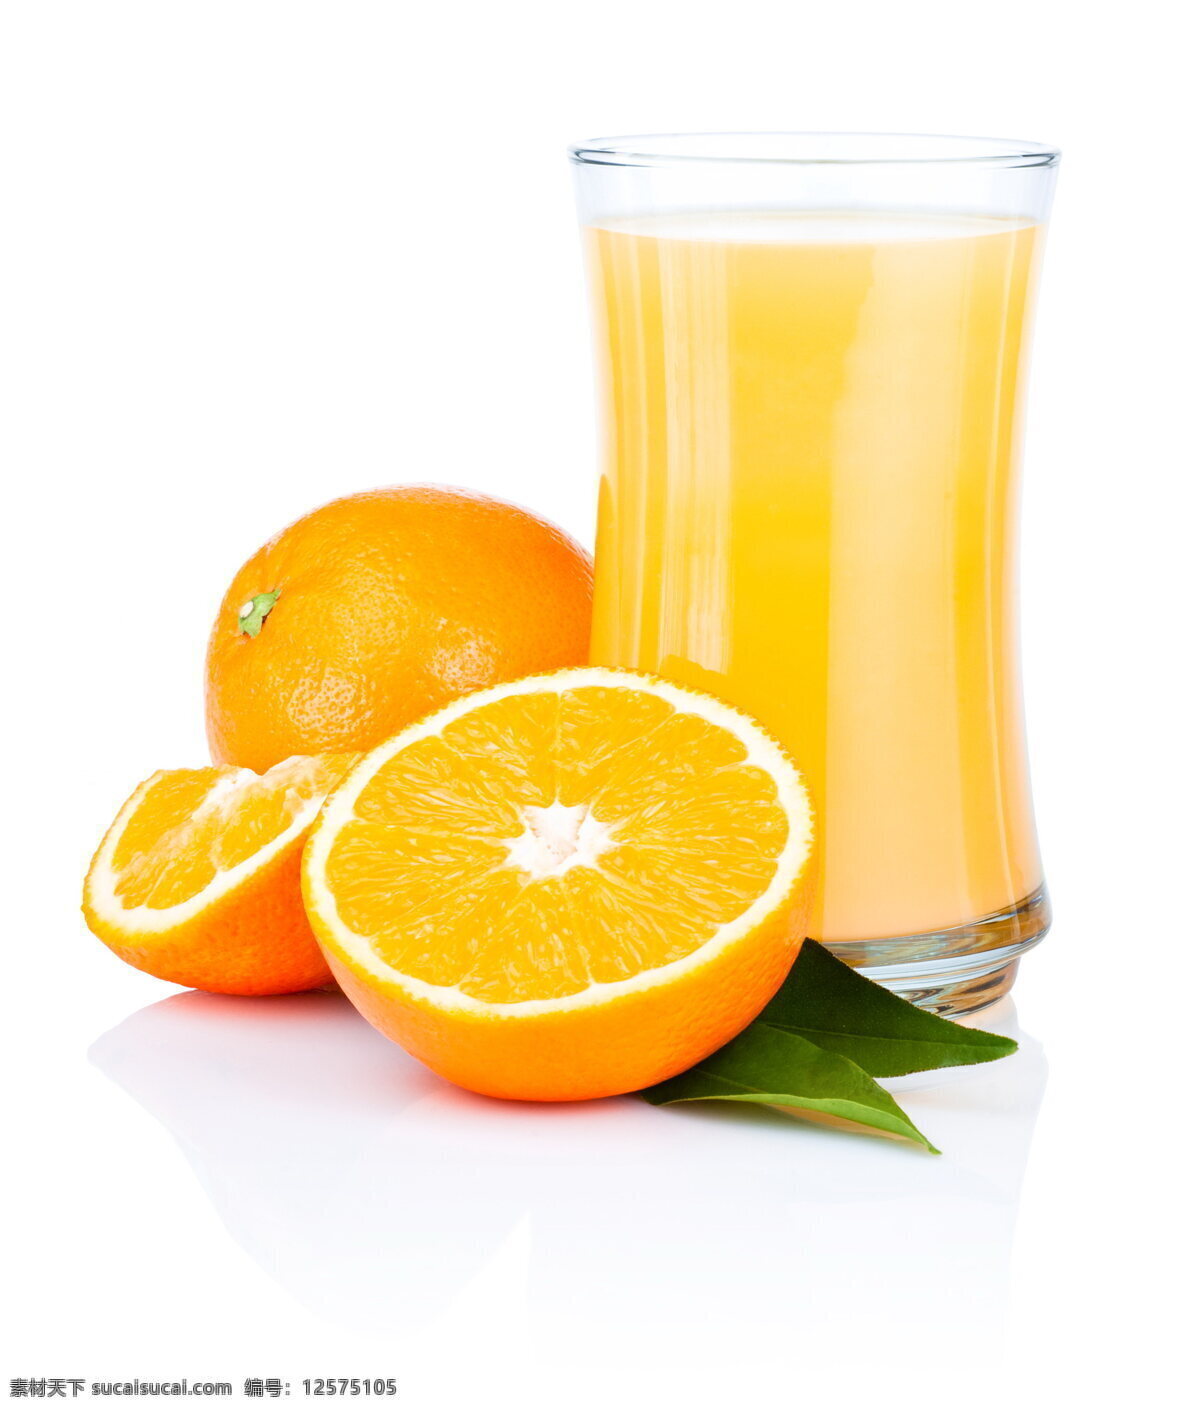 唯美鲜橙汁 唯美 果汁 鲜橙汁 饮料 饮品 新鲜 鲜果 橙子 鲜橙 营养 健康 餐饮美食 饮料酒水